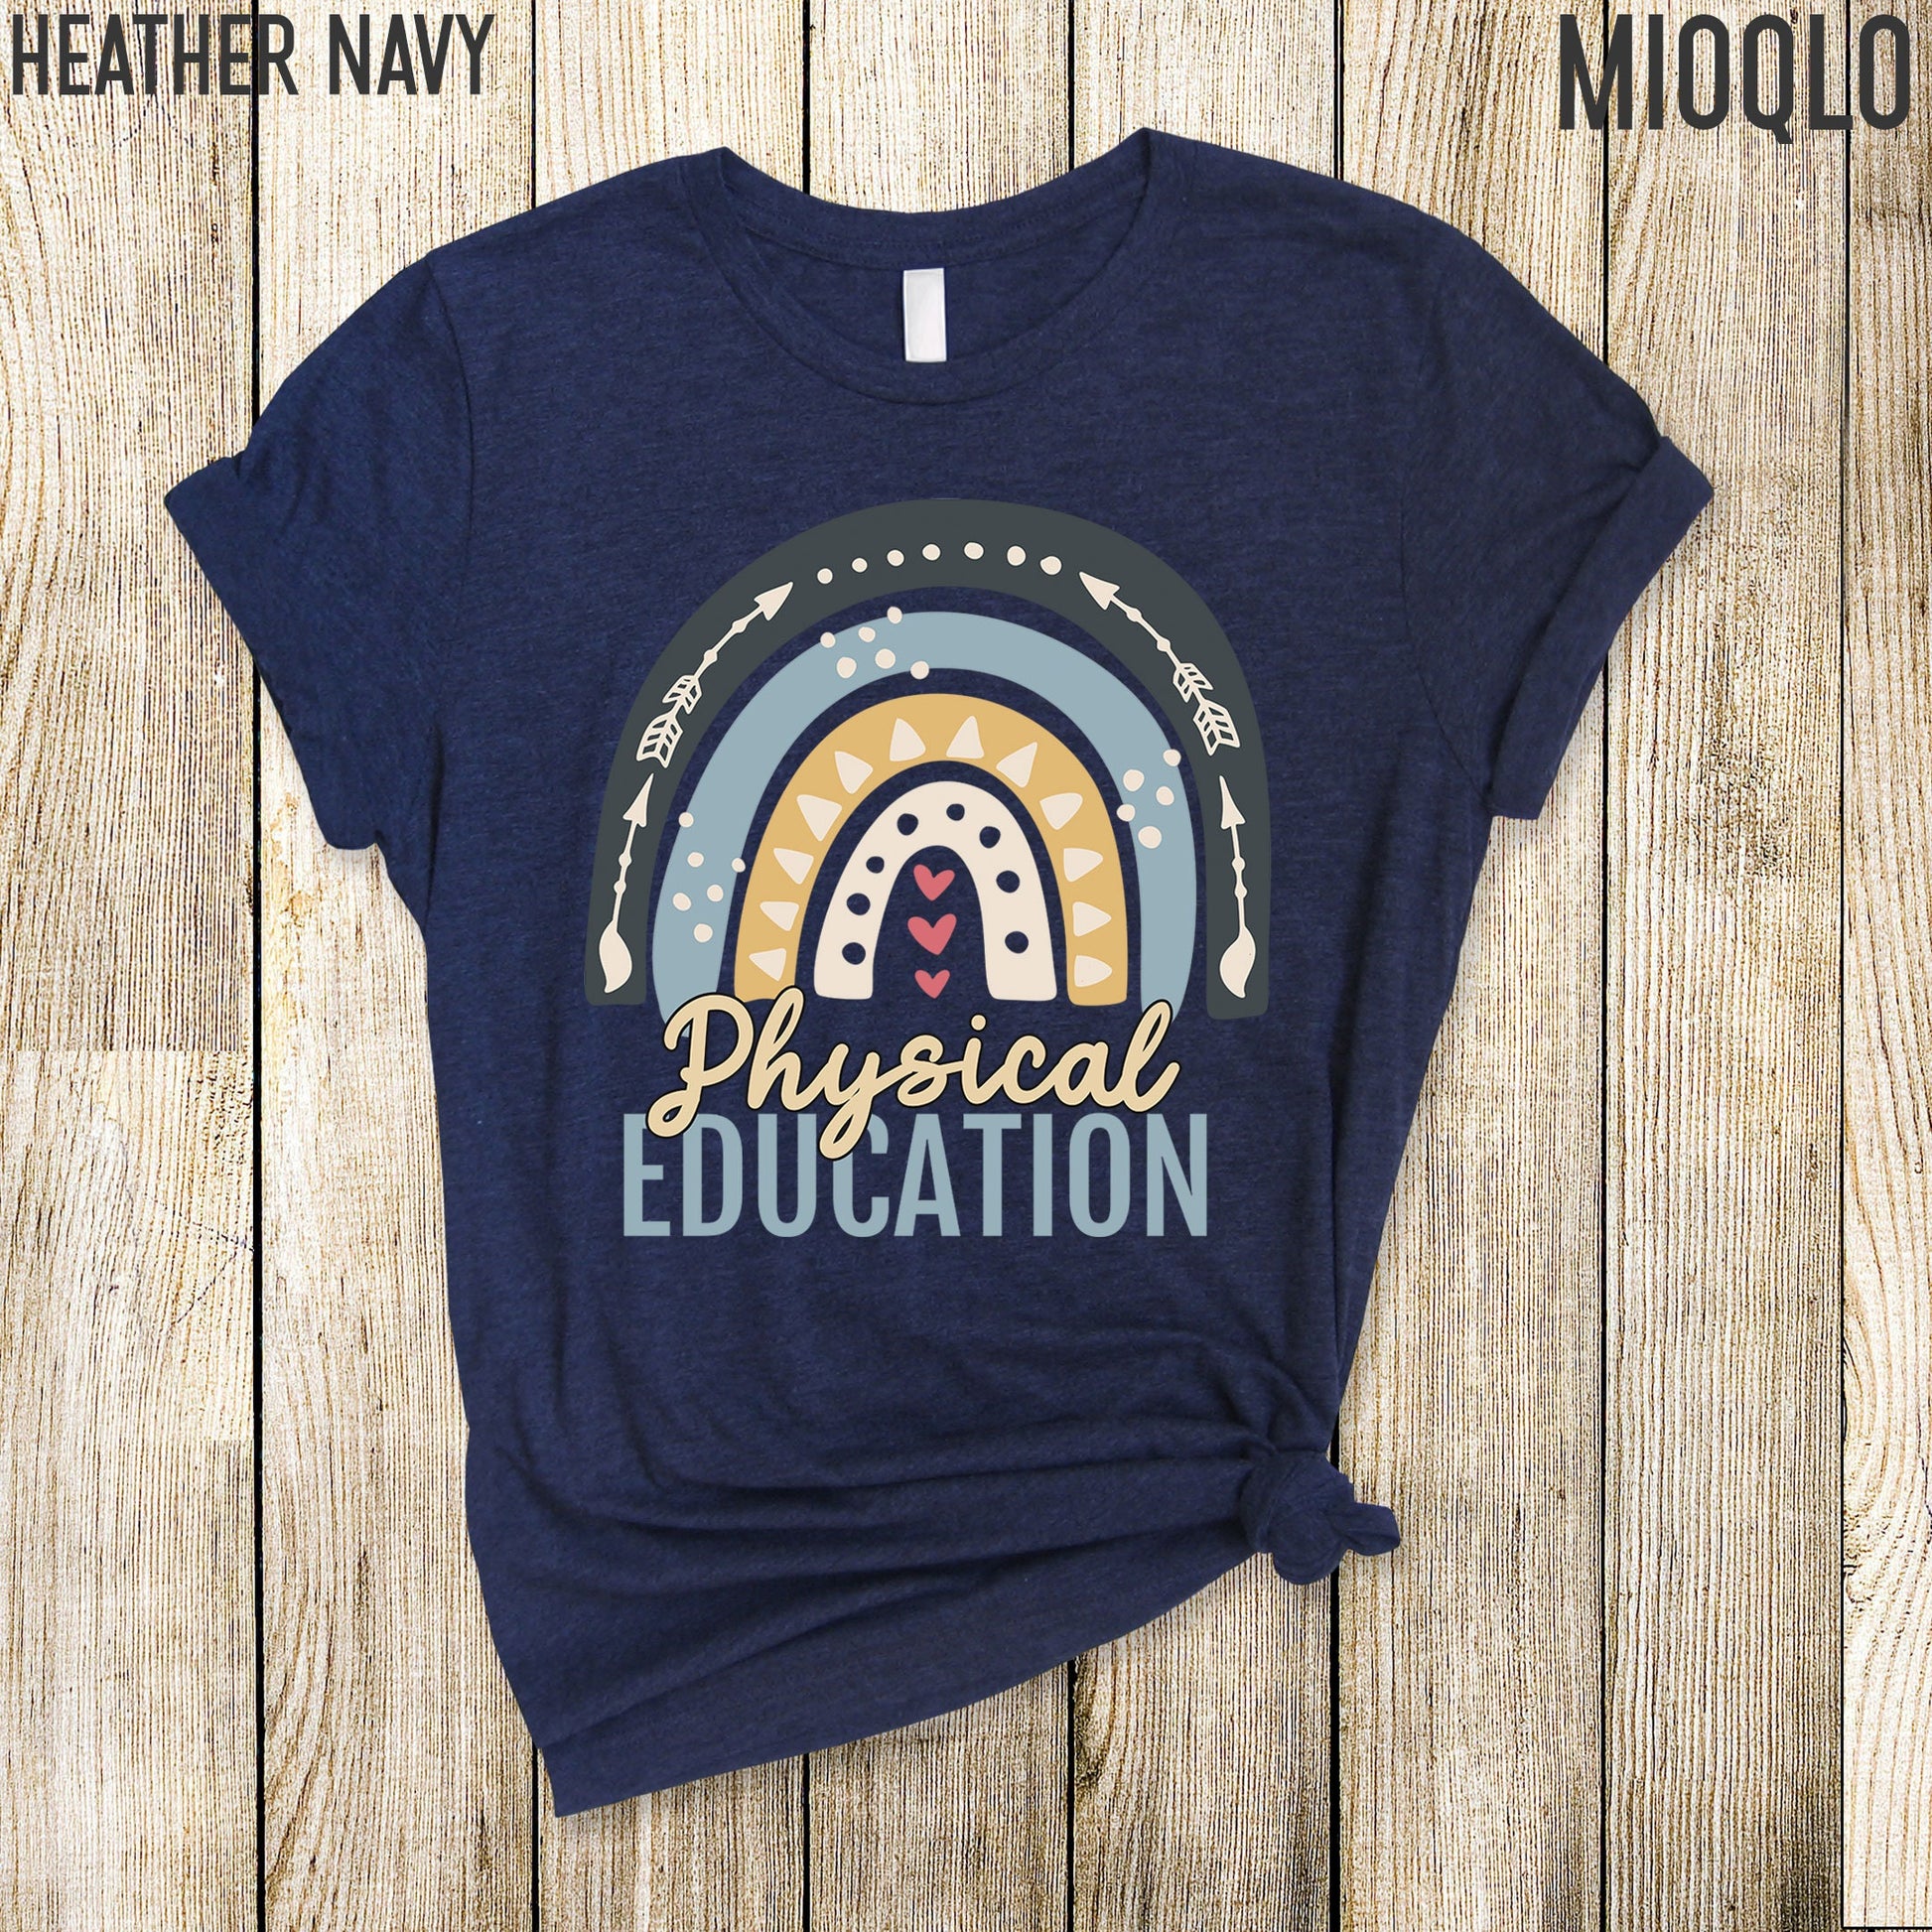 PE Teacher Shirt, PE Teacher Gift, Physical Education Gifts, Physical Education Teacher Shirt, Physical Education, Physical Education Shirt